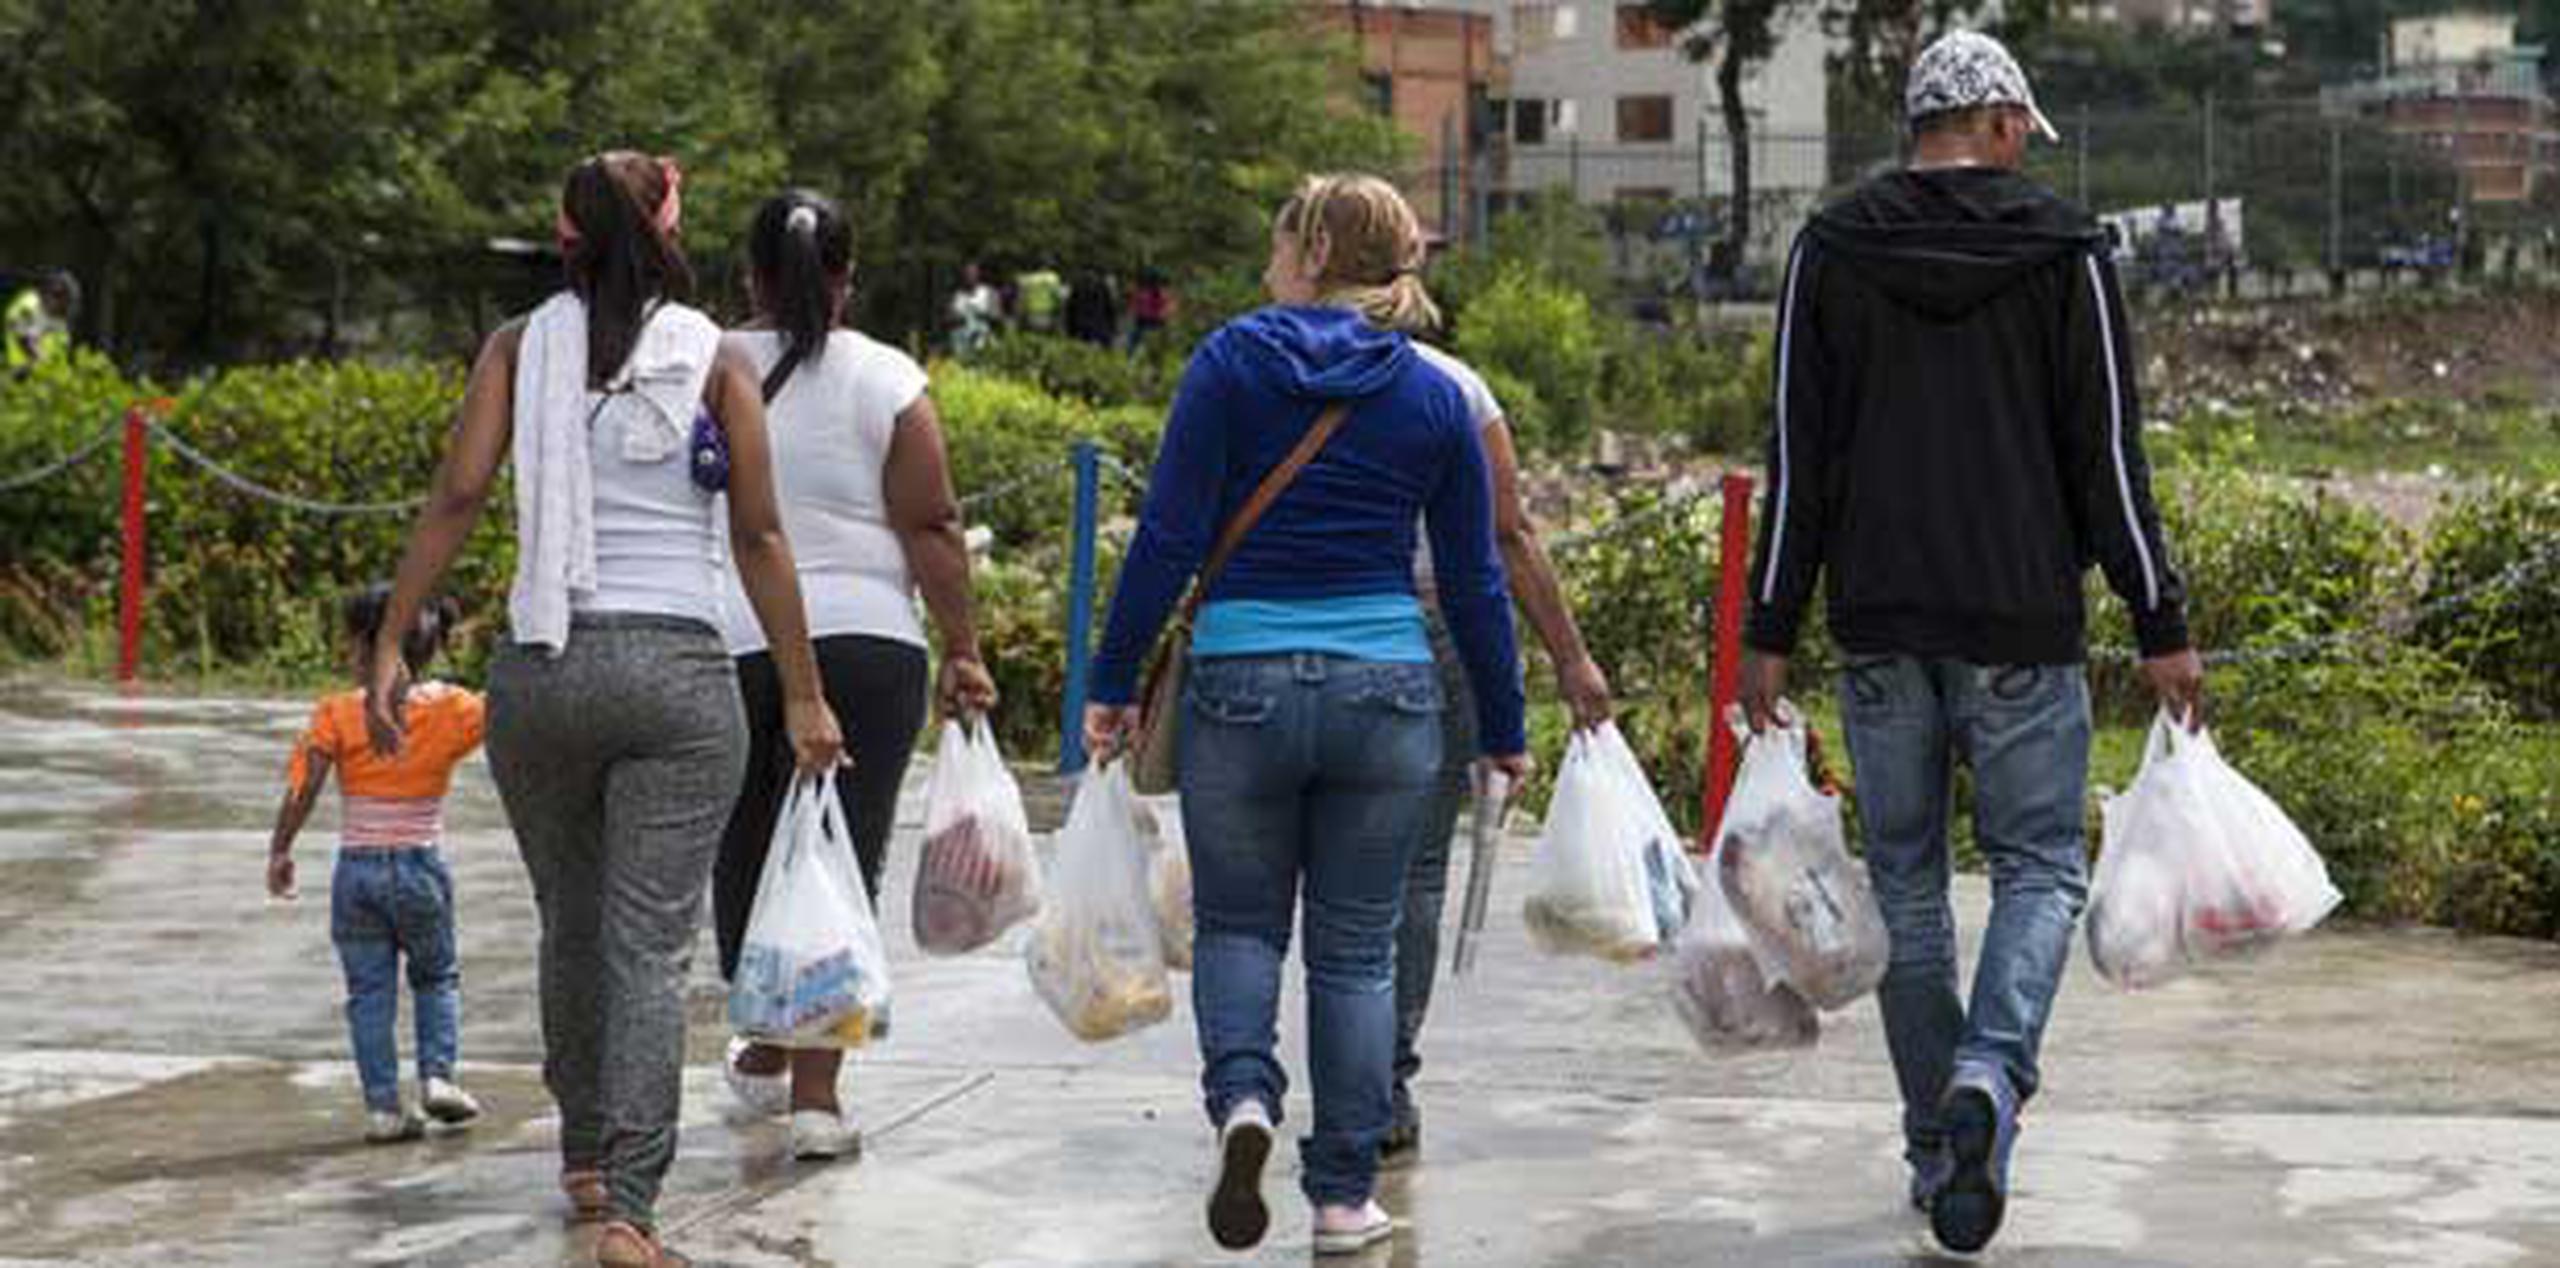 El Gobierno venezolano lucha desde hace meses contra el desabastecimiento de productos de primera necesidad en el país, una situación de la que responsabiliza a una "guerra económica" por parte de empresas privadas. (EFE)